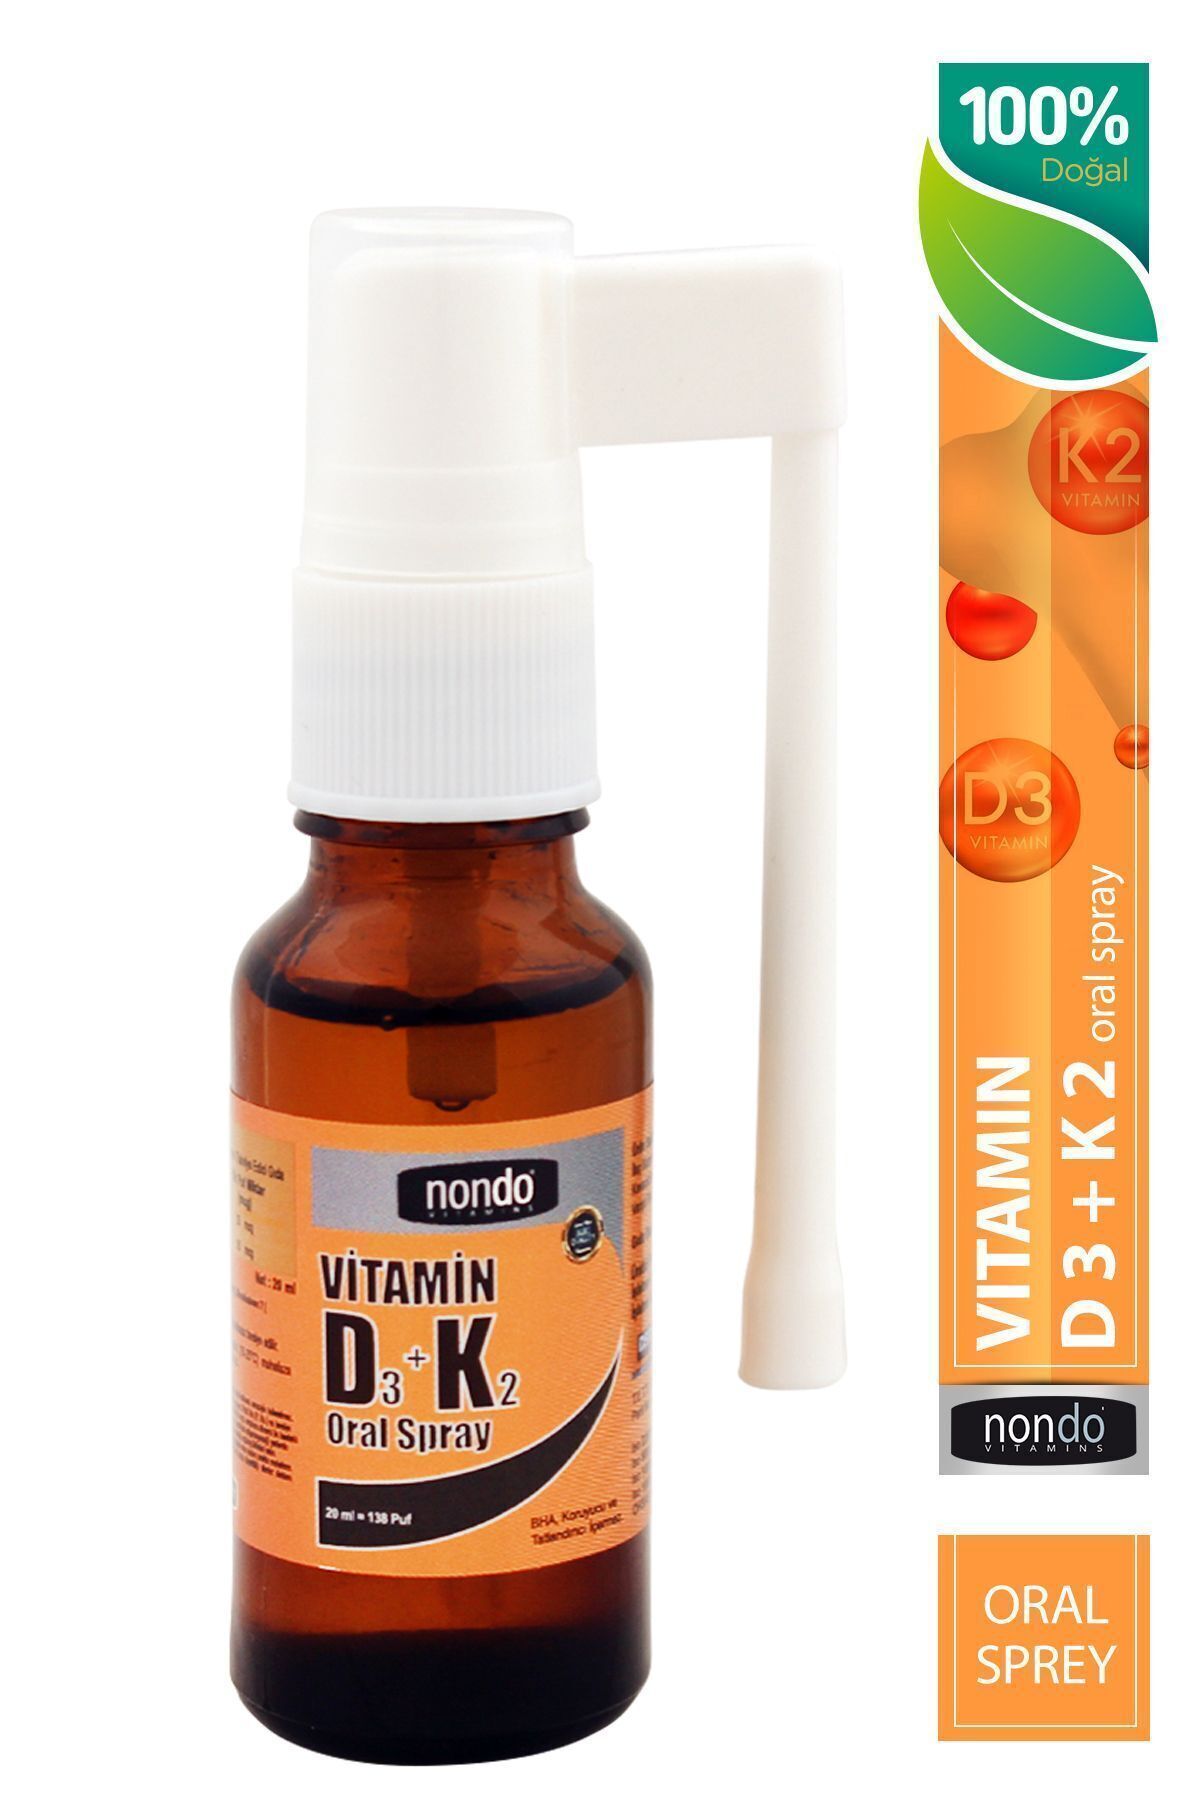 Nondo Vitamins D3k2 Vitamini Oral Sprey 20 ml 138 Puf